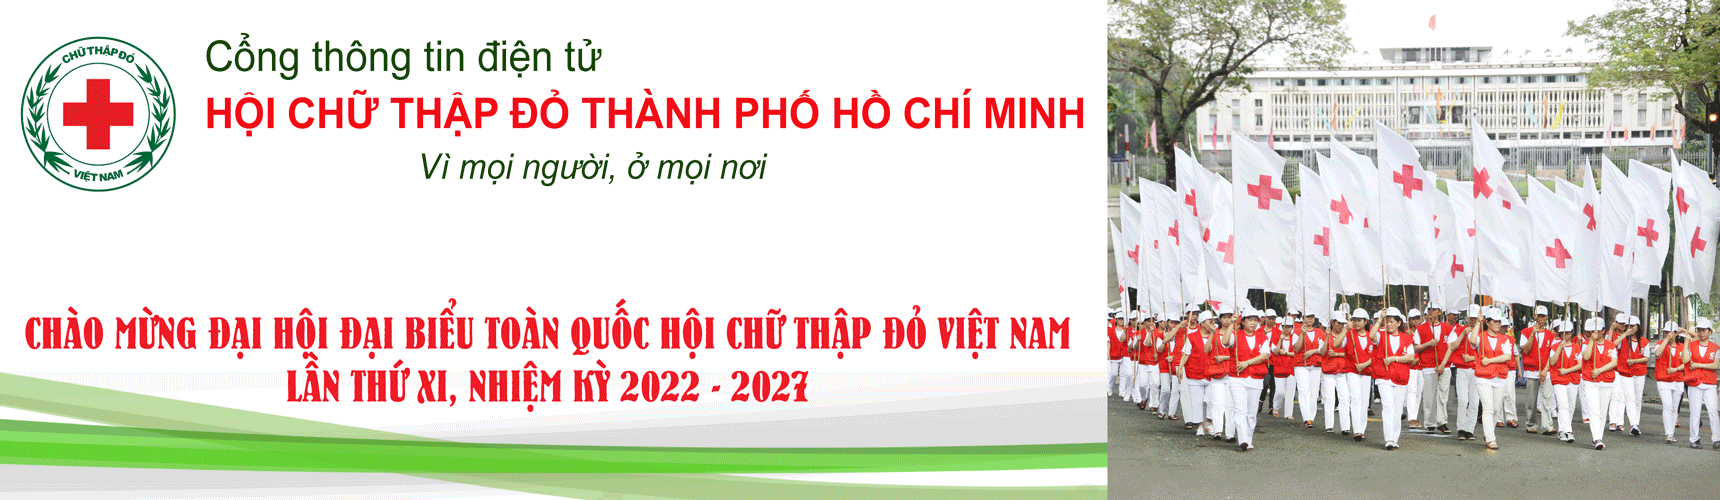 Hội Chữ thập đỏ Thành phố Hồ Chí Minh | Hội Chữ thập đỏ Quận 10 hưởng ứng Tháng Nhân đạo năm 2022 với nhiều hoạt động thiết thực 